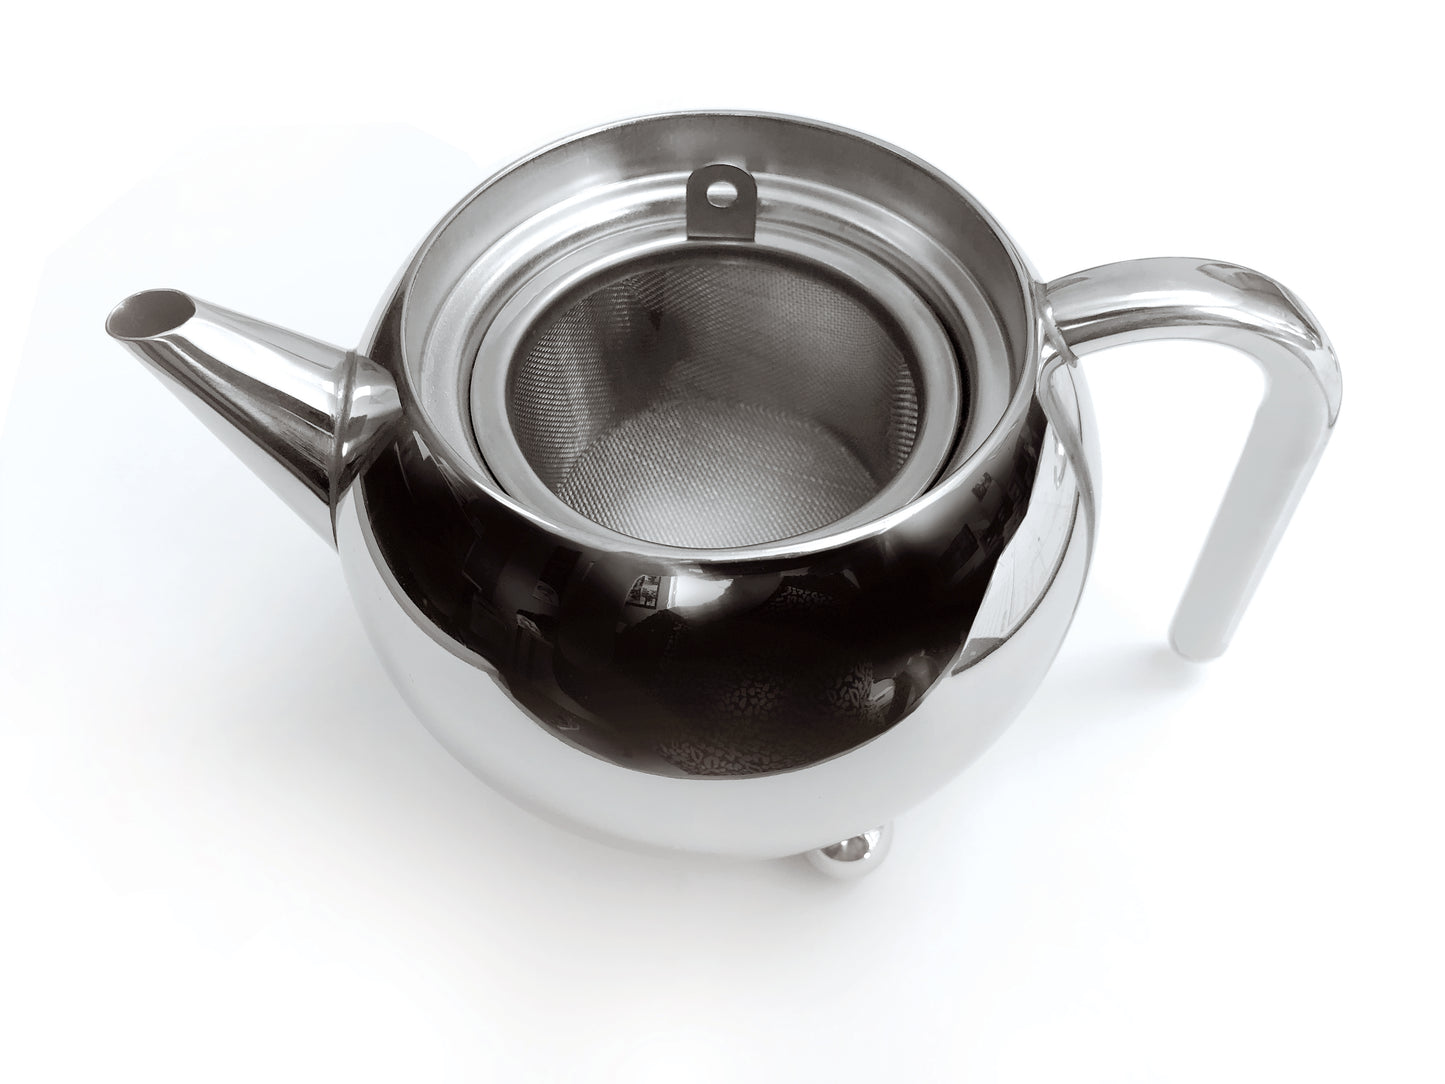 Cuisinox Infuser Basket for Tea pots